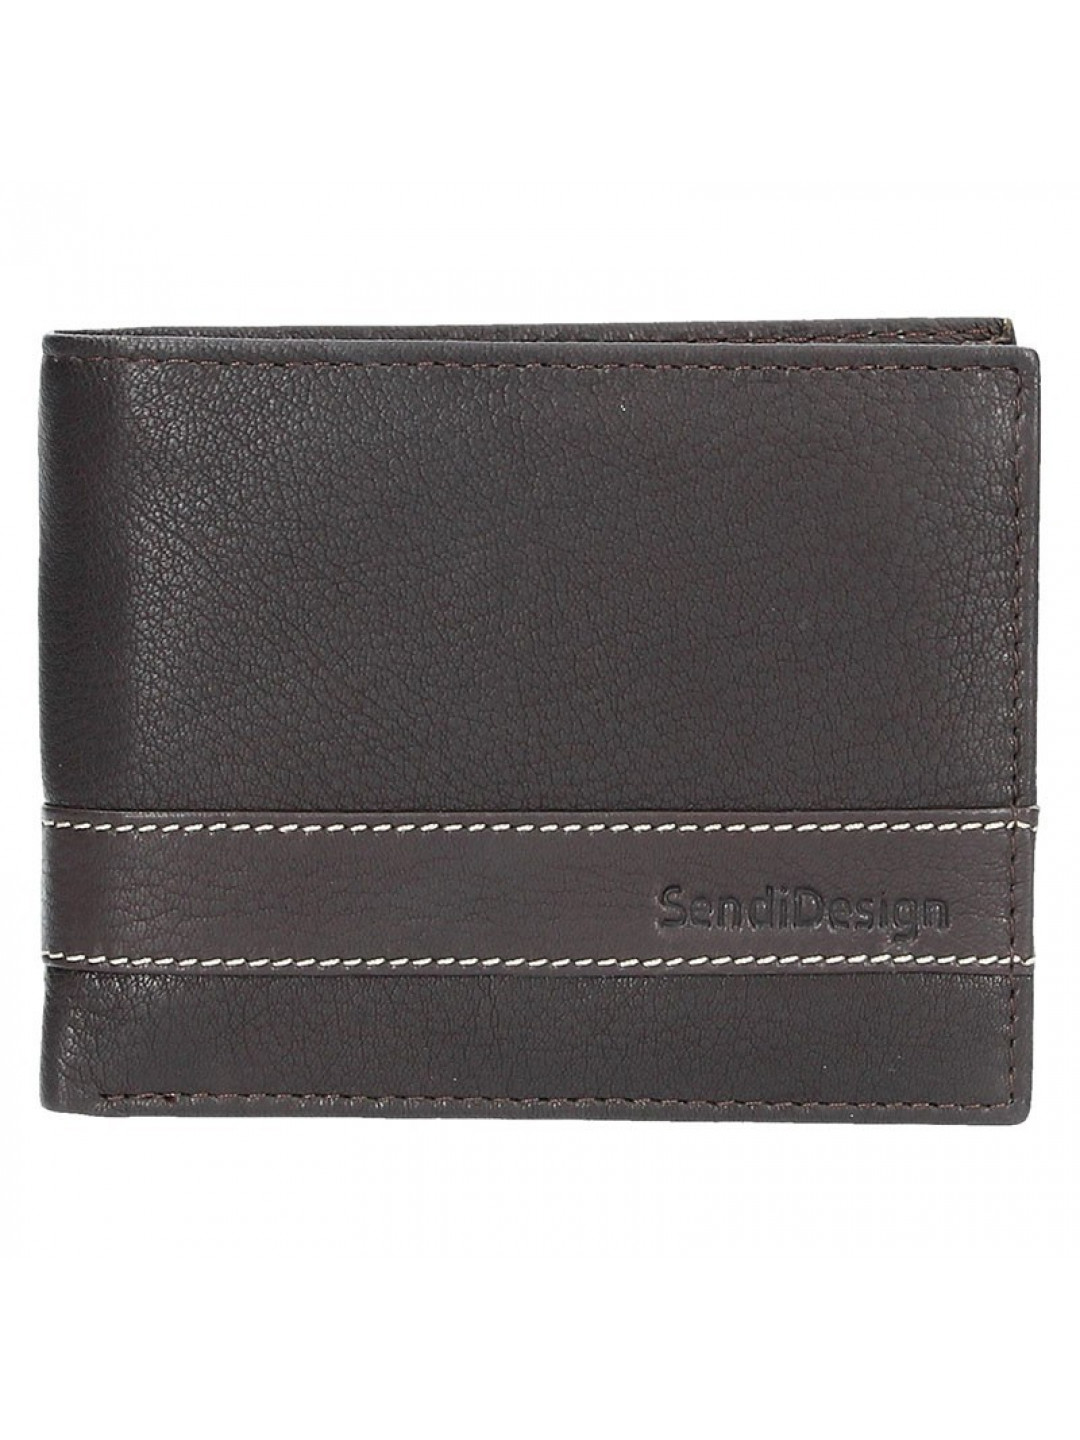 Pánská kožená peněženka SendiDesign 44 – hnědá